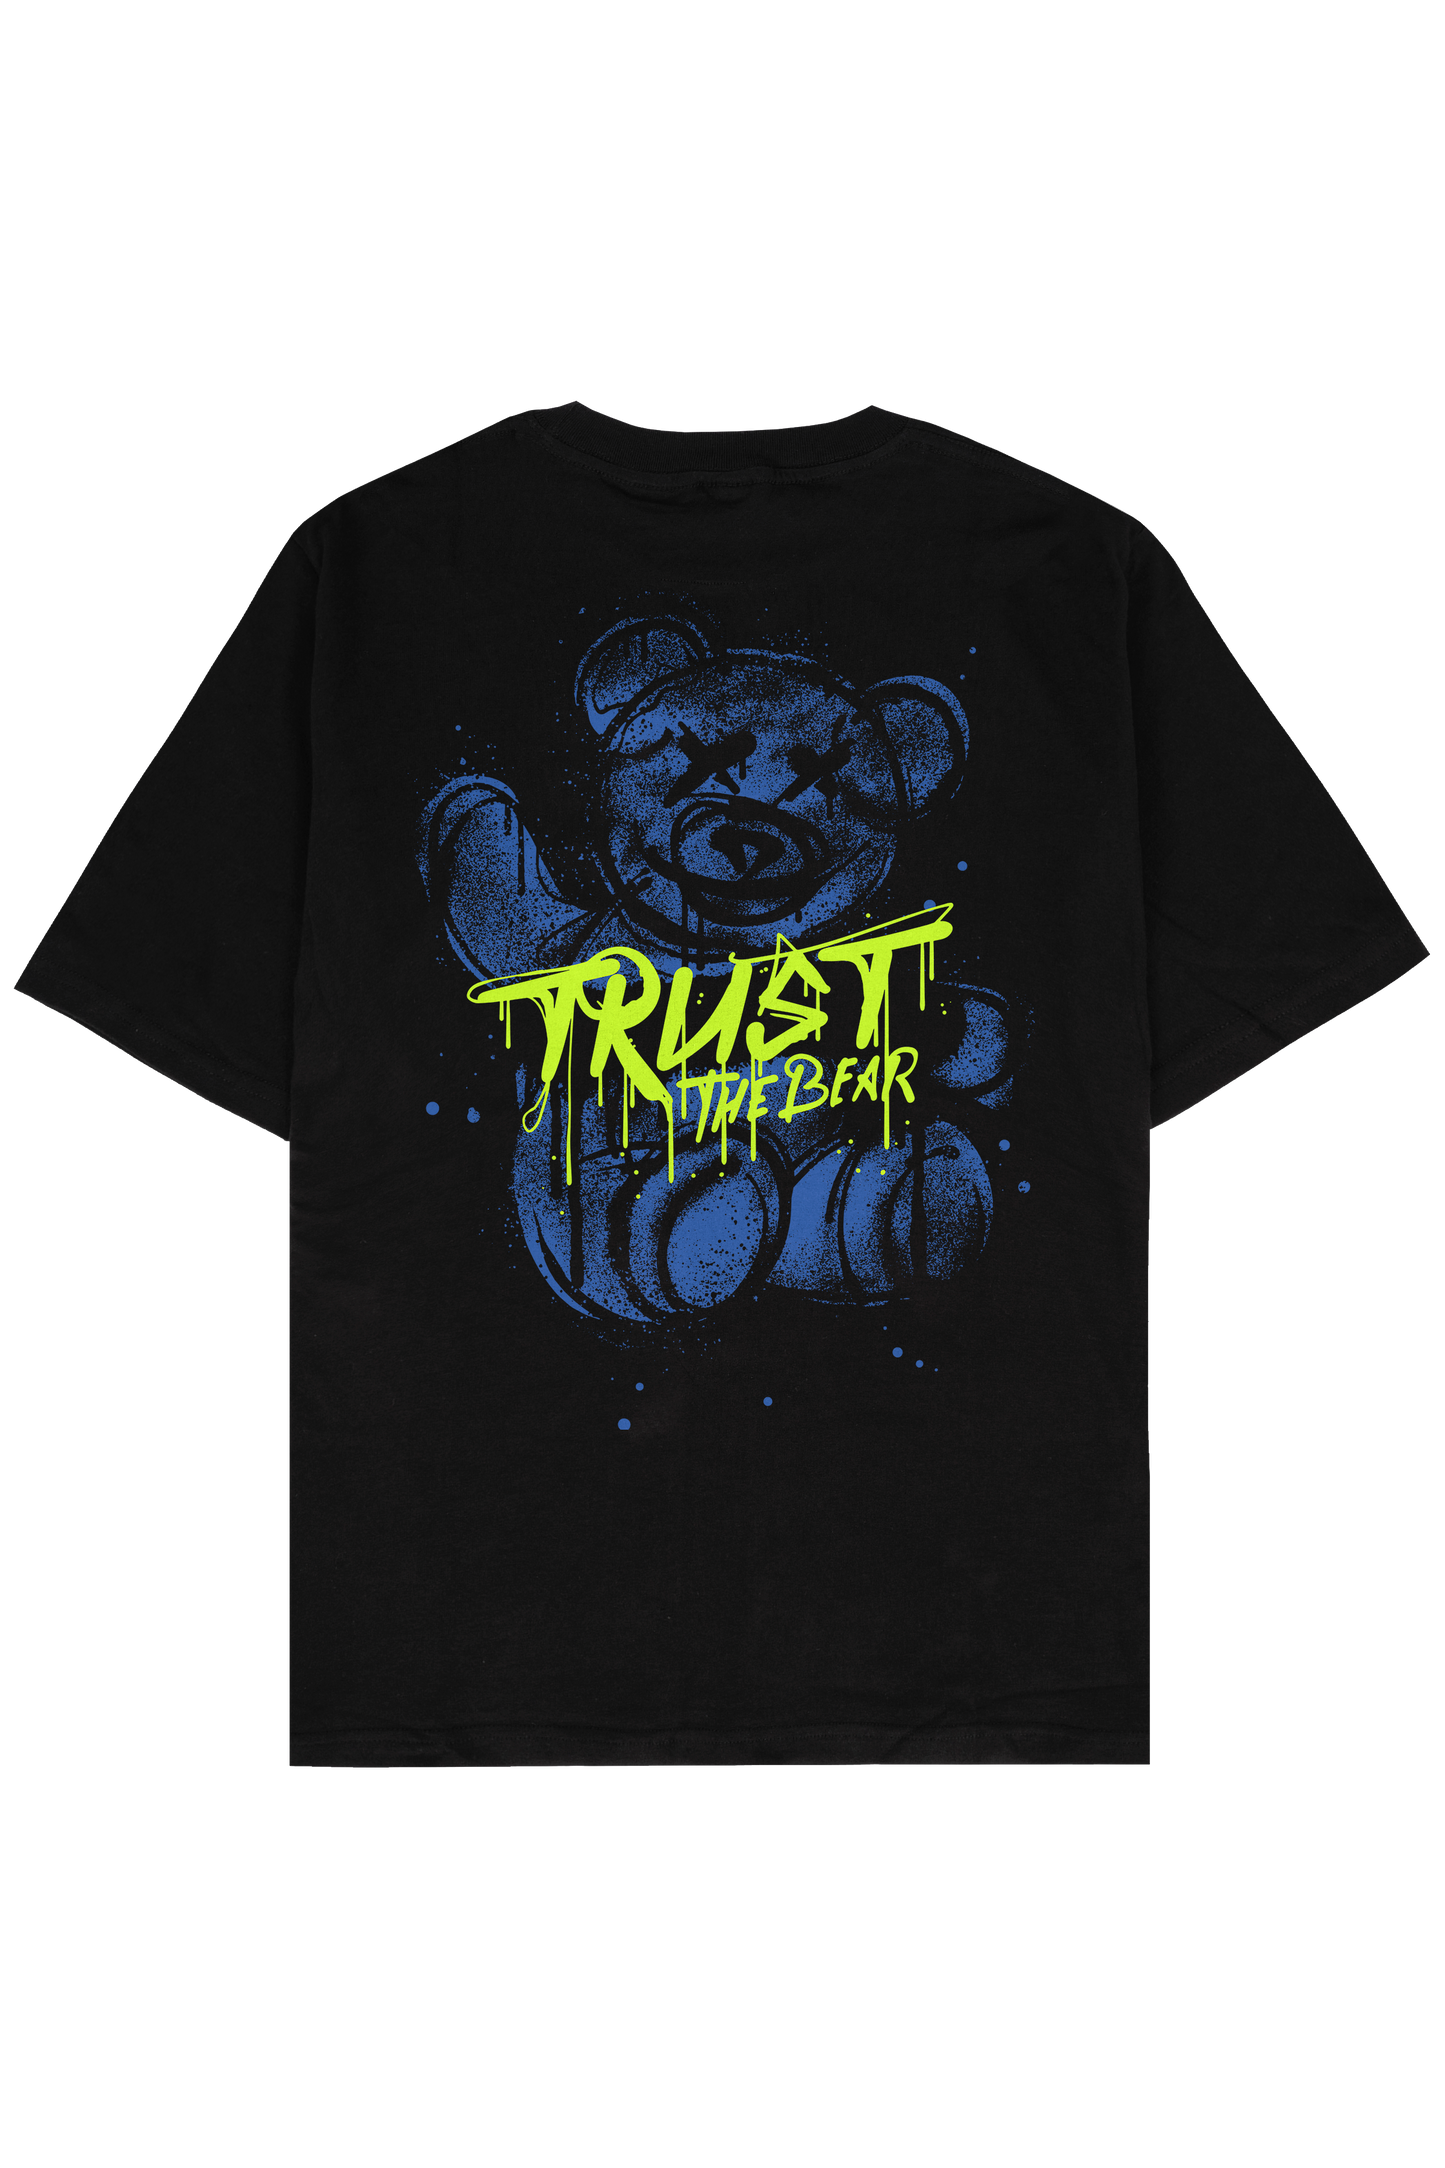 
                  
                    Trust The Bear
                  
                